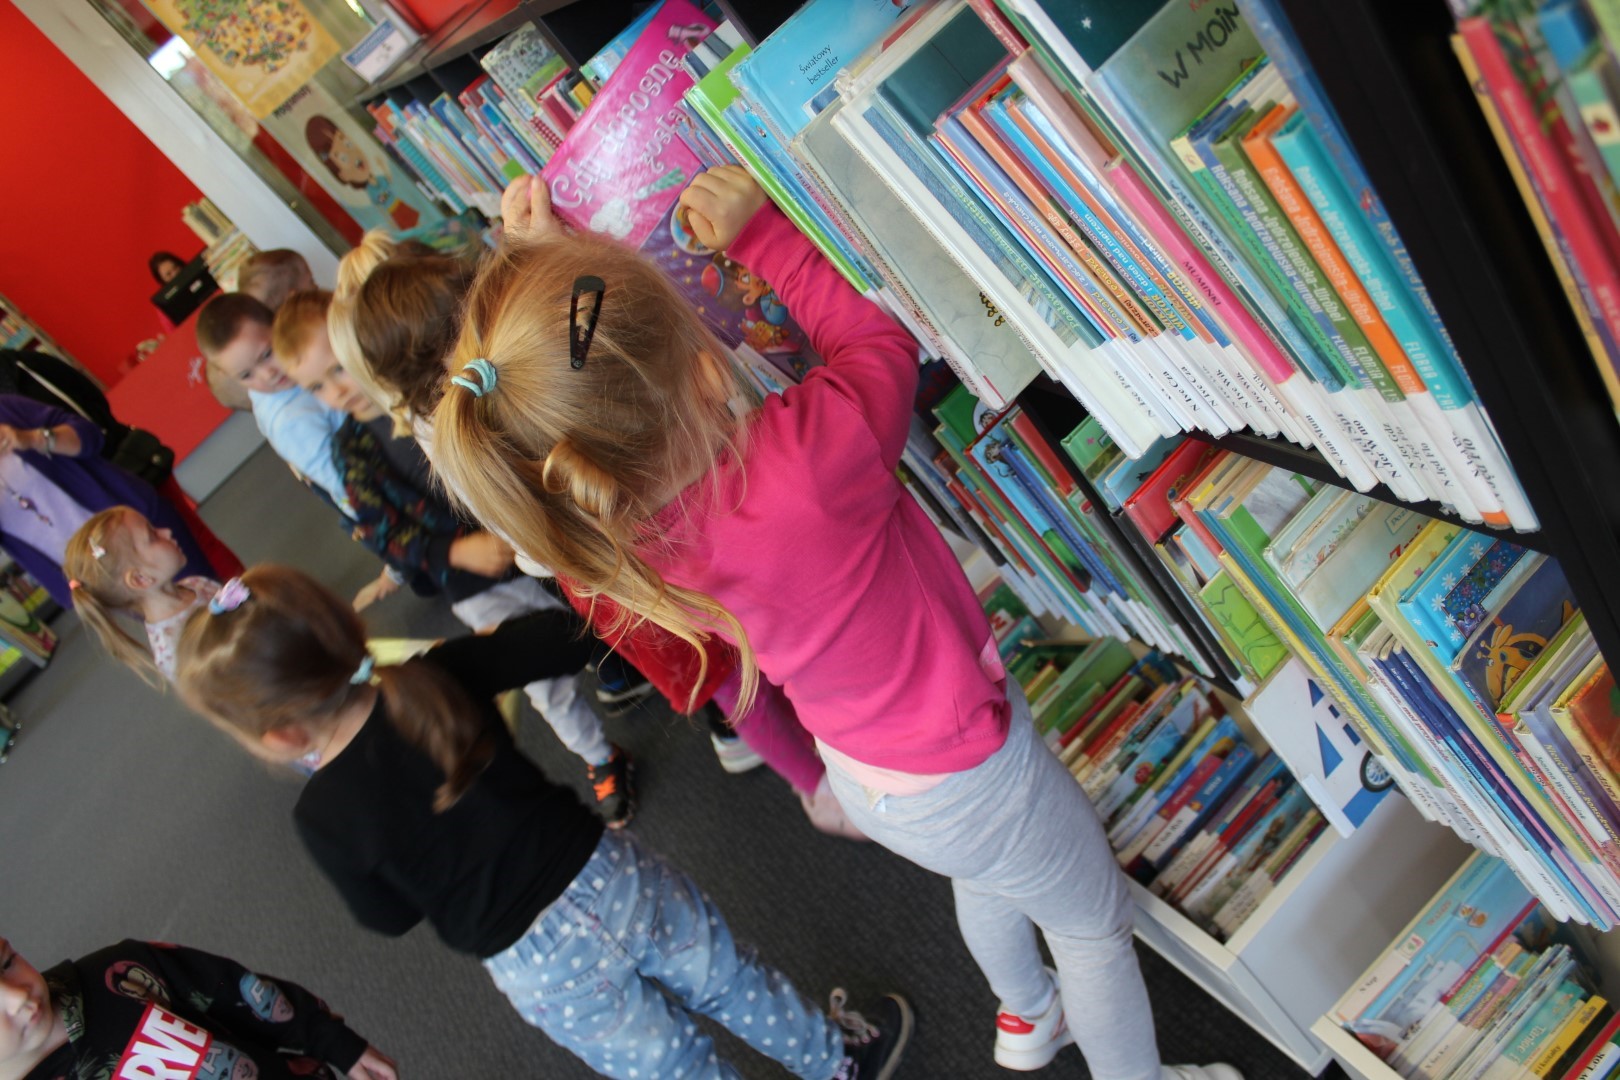 Grupa dzieci stoi przy półce z książkami, ogląda wybrane książki